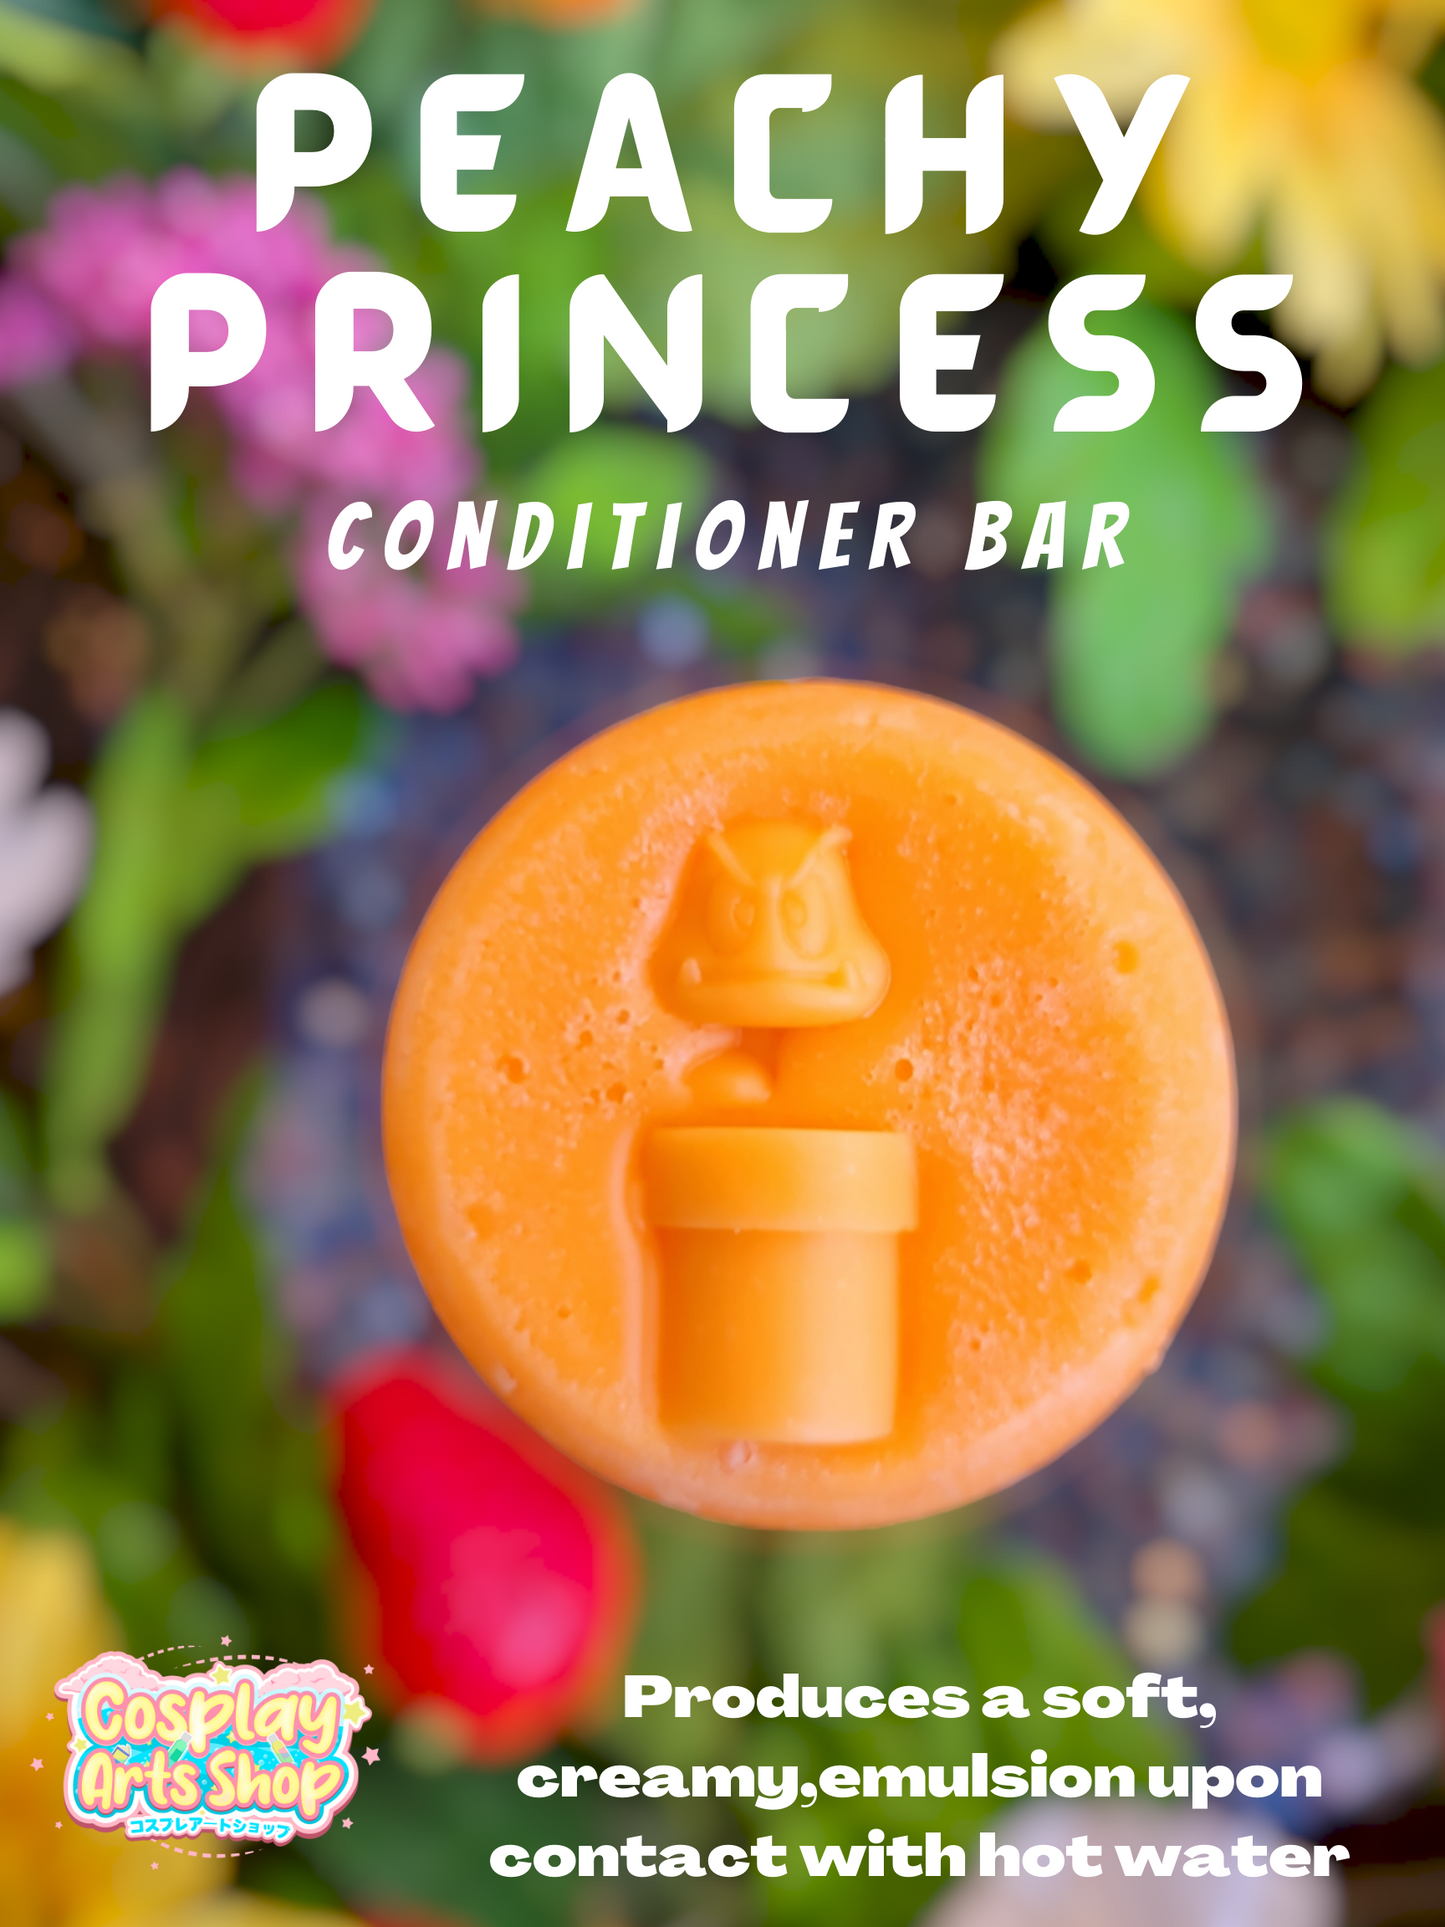 Peachy Princess Conditioner Bars - Cosplay Arts Shop